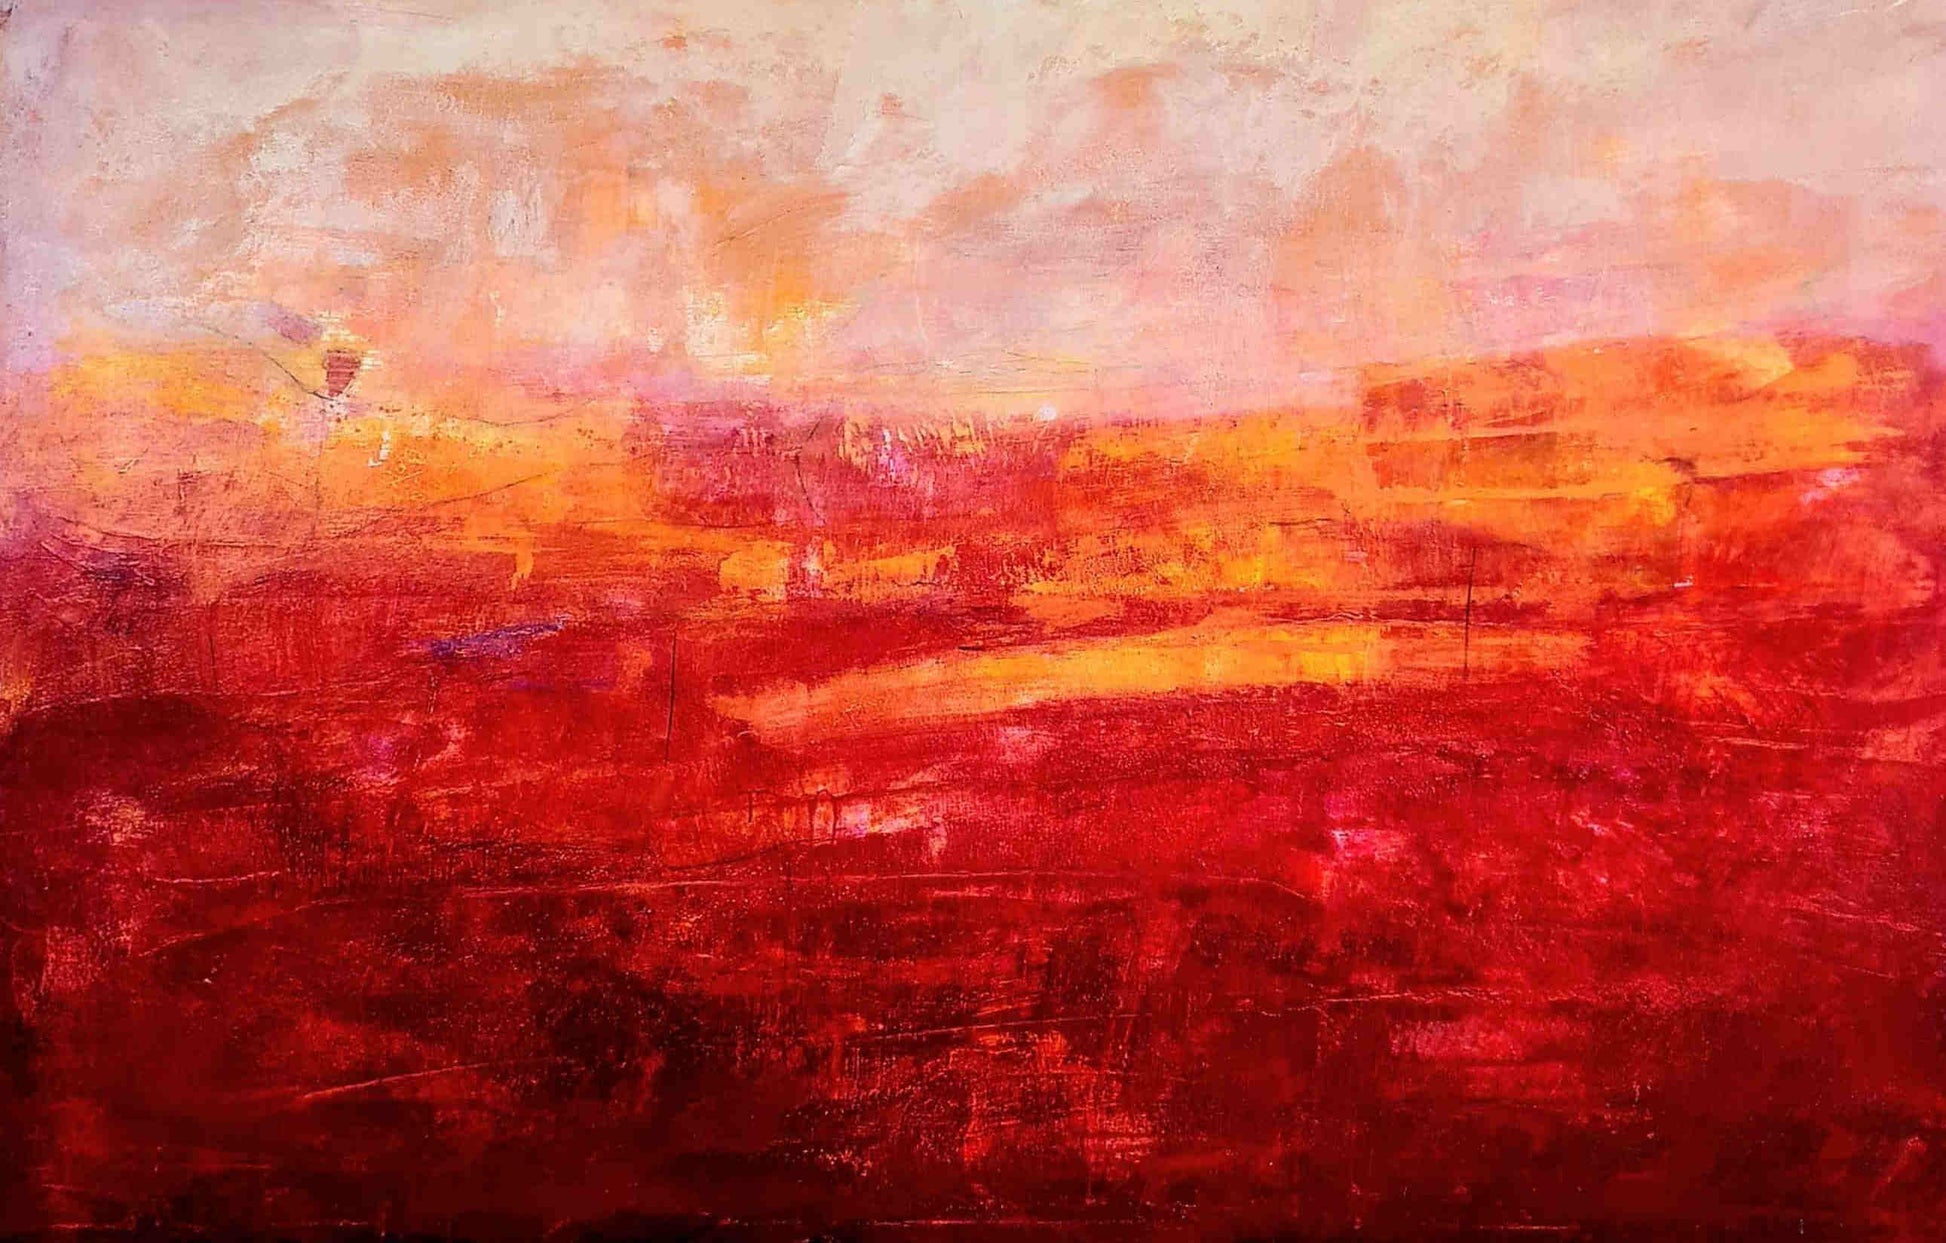 200 x 135 cm - Abstrakte rote Malerei als besonderes Kunstwerk für Ihre Räumlichkeiten,abstrakte große Leinwandbilder abstrakte Bilder kaufen ,